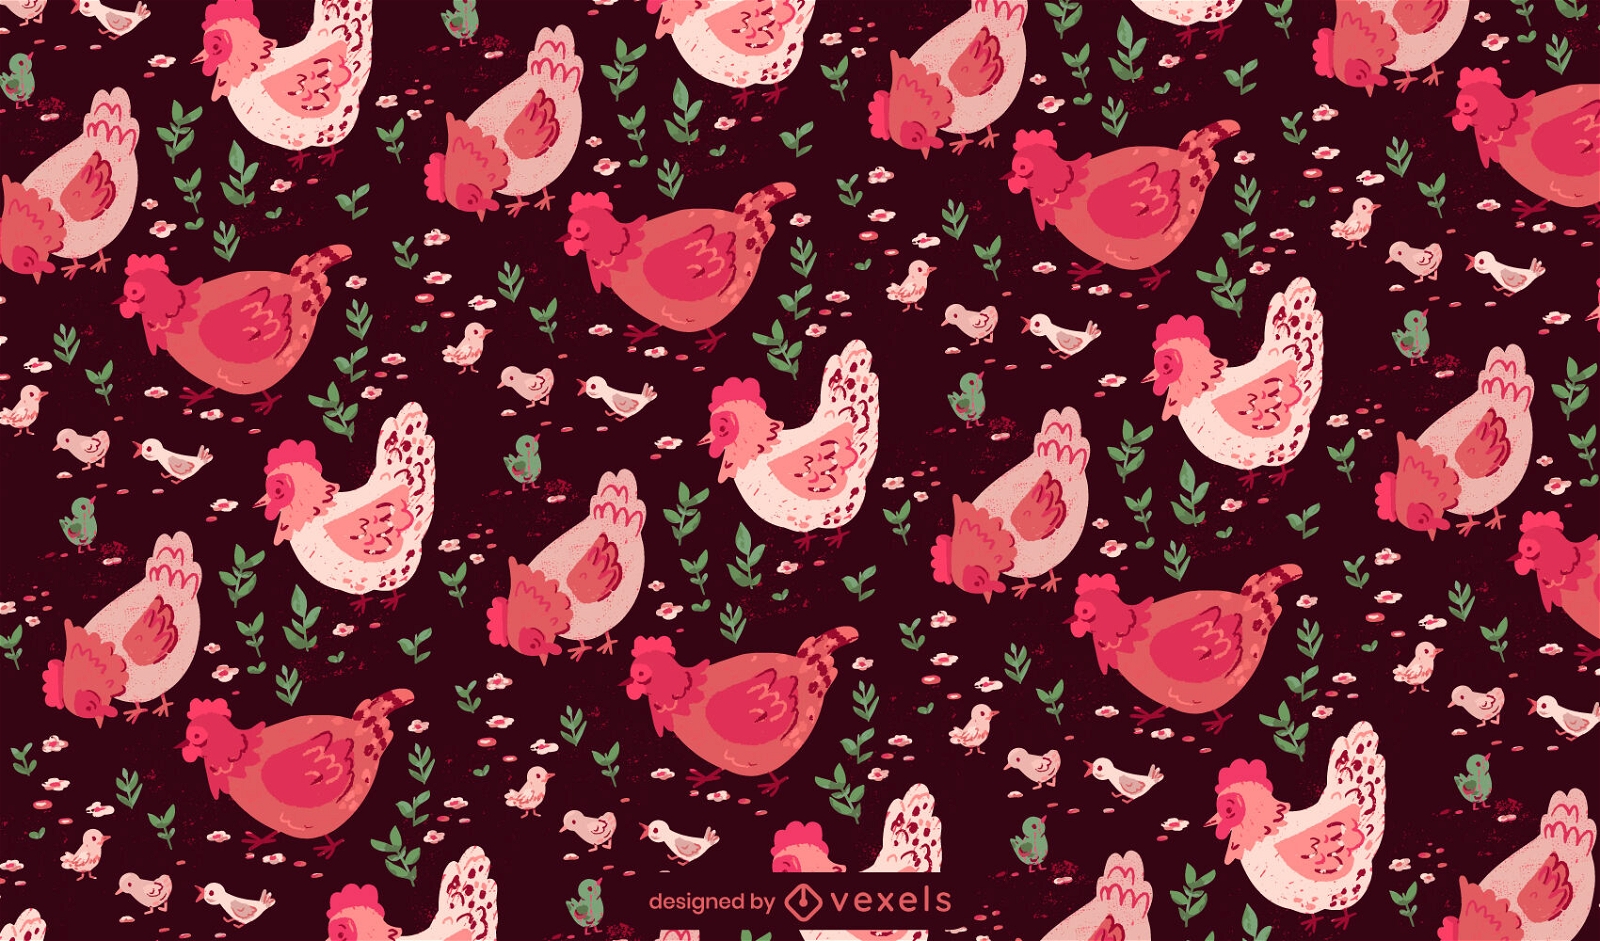 Chicks and chicken pattern design